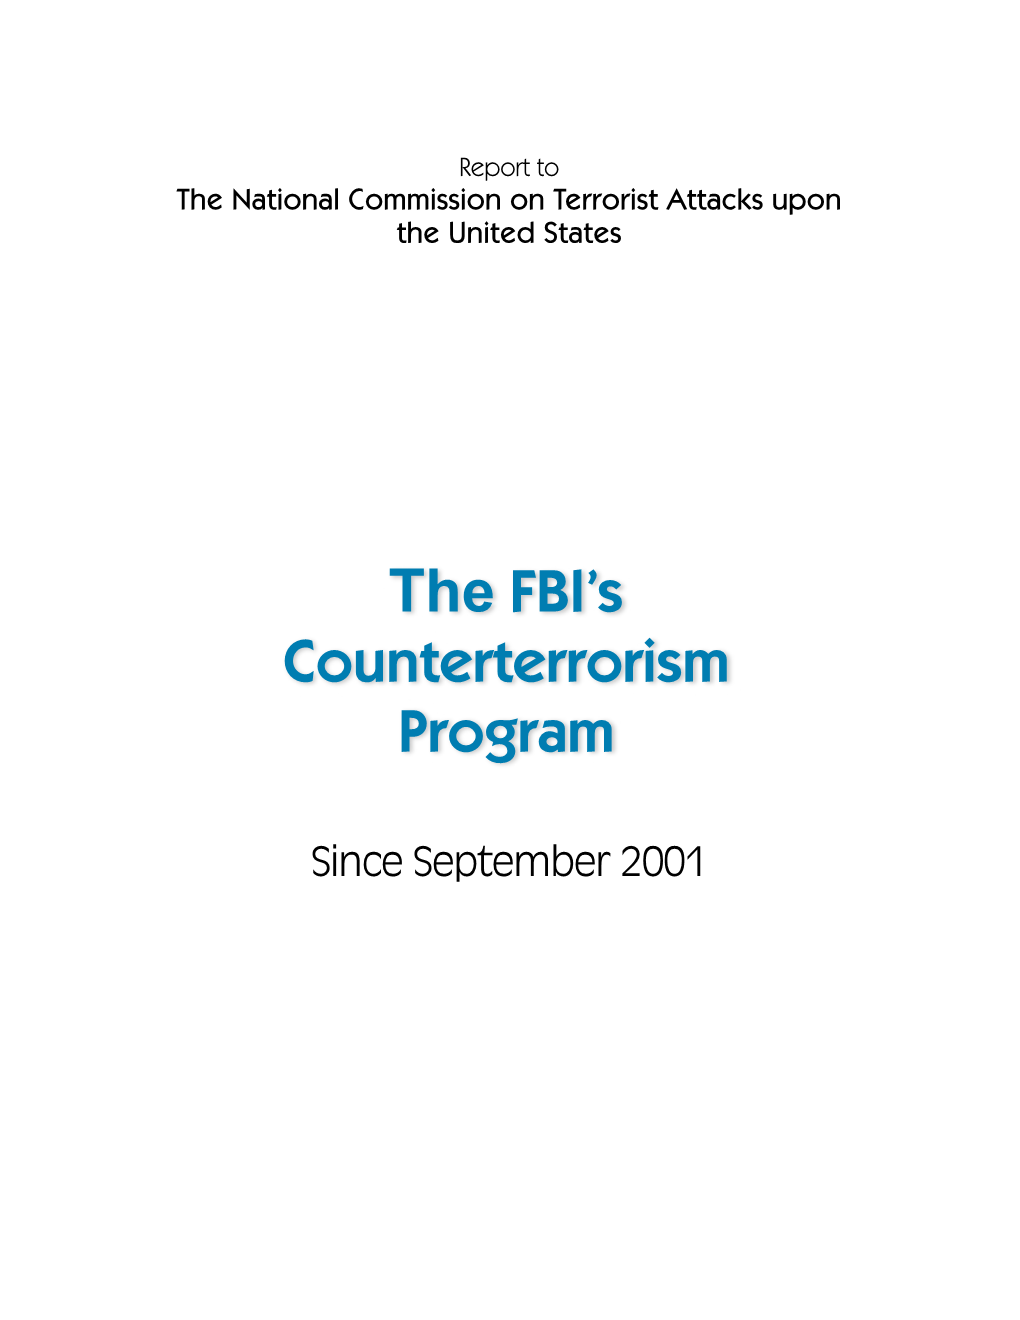 The FBI's Counterterrorism Program Since September 2001